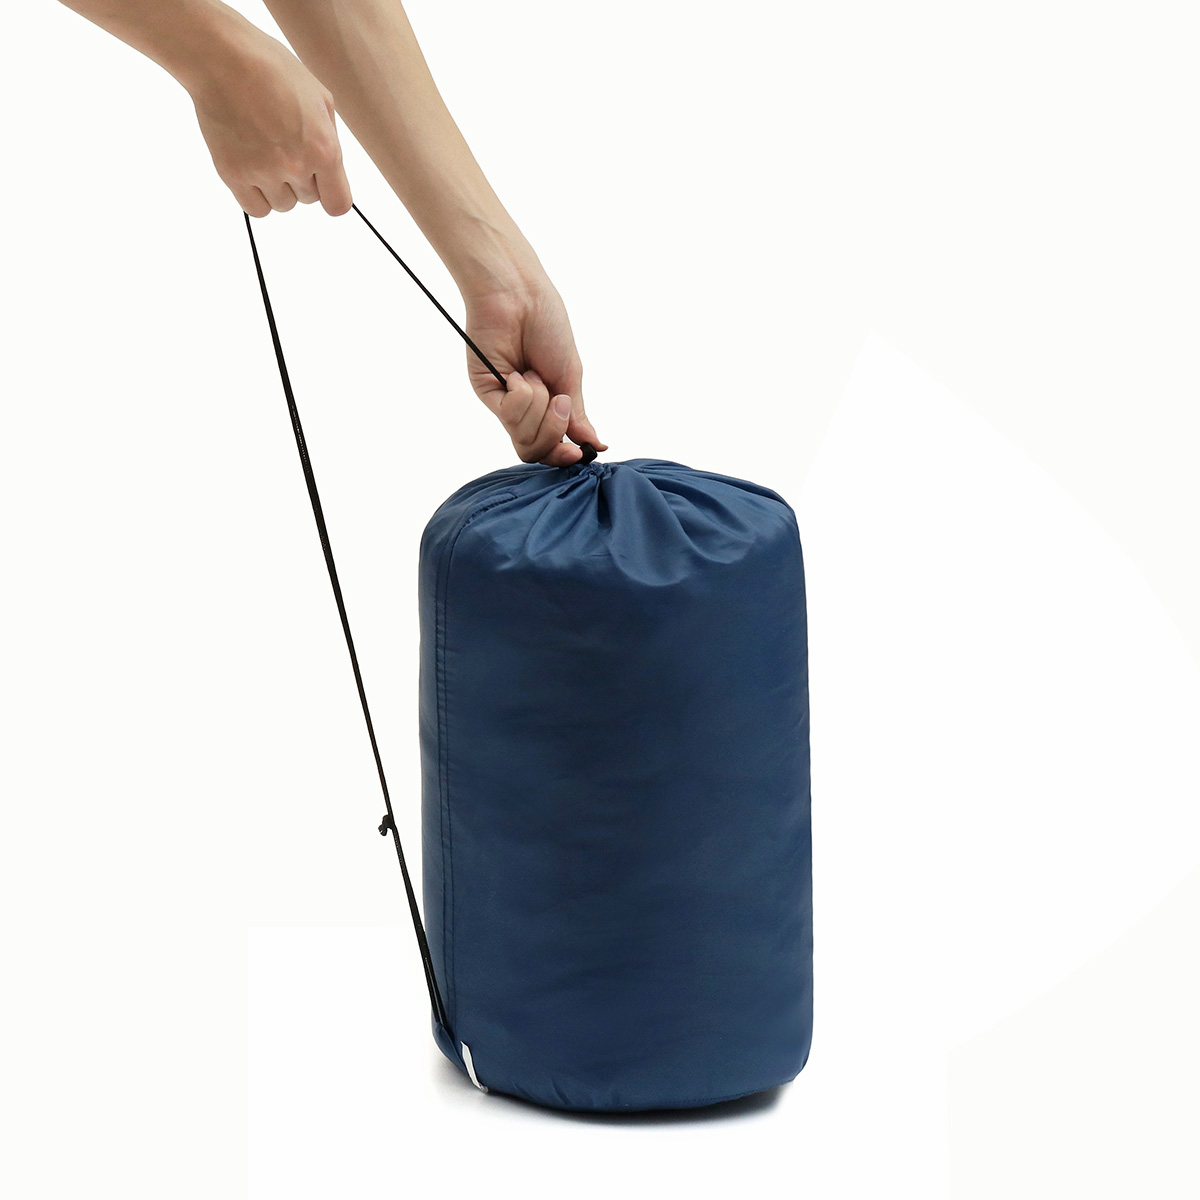 10x75CM-Waterproof-Camping-Envelope-Sleeping-Bag-Outdoor-Hiking-Backpacking-Sleeping-Bag-with-Compre-1647670-7